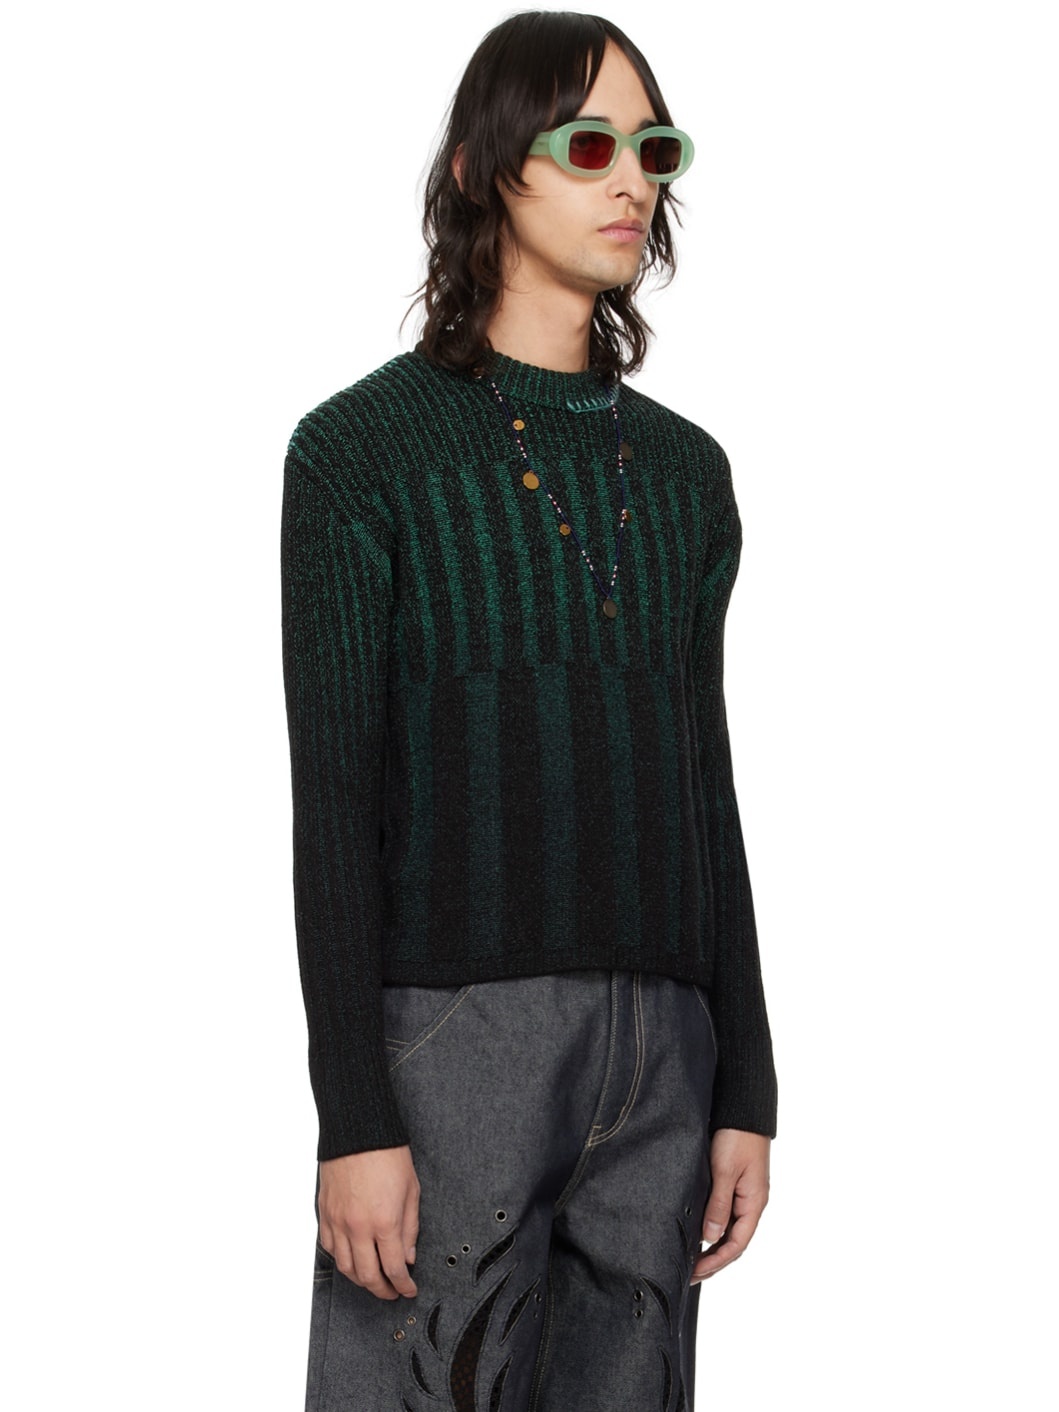 Black & Green Woosoo Sweater - 2